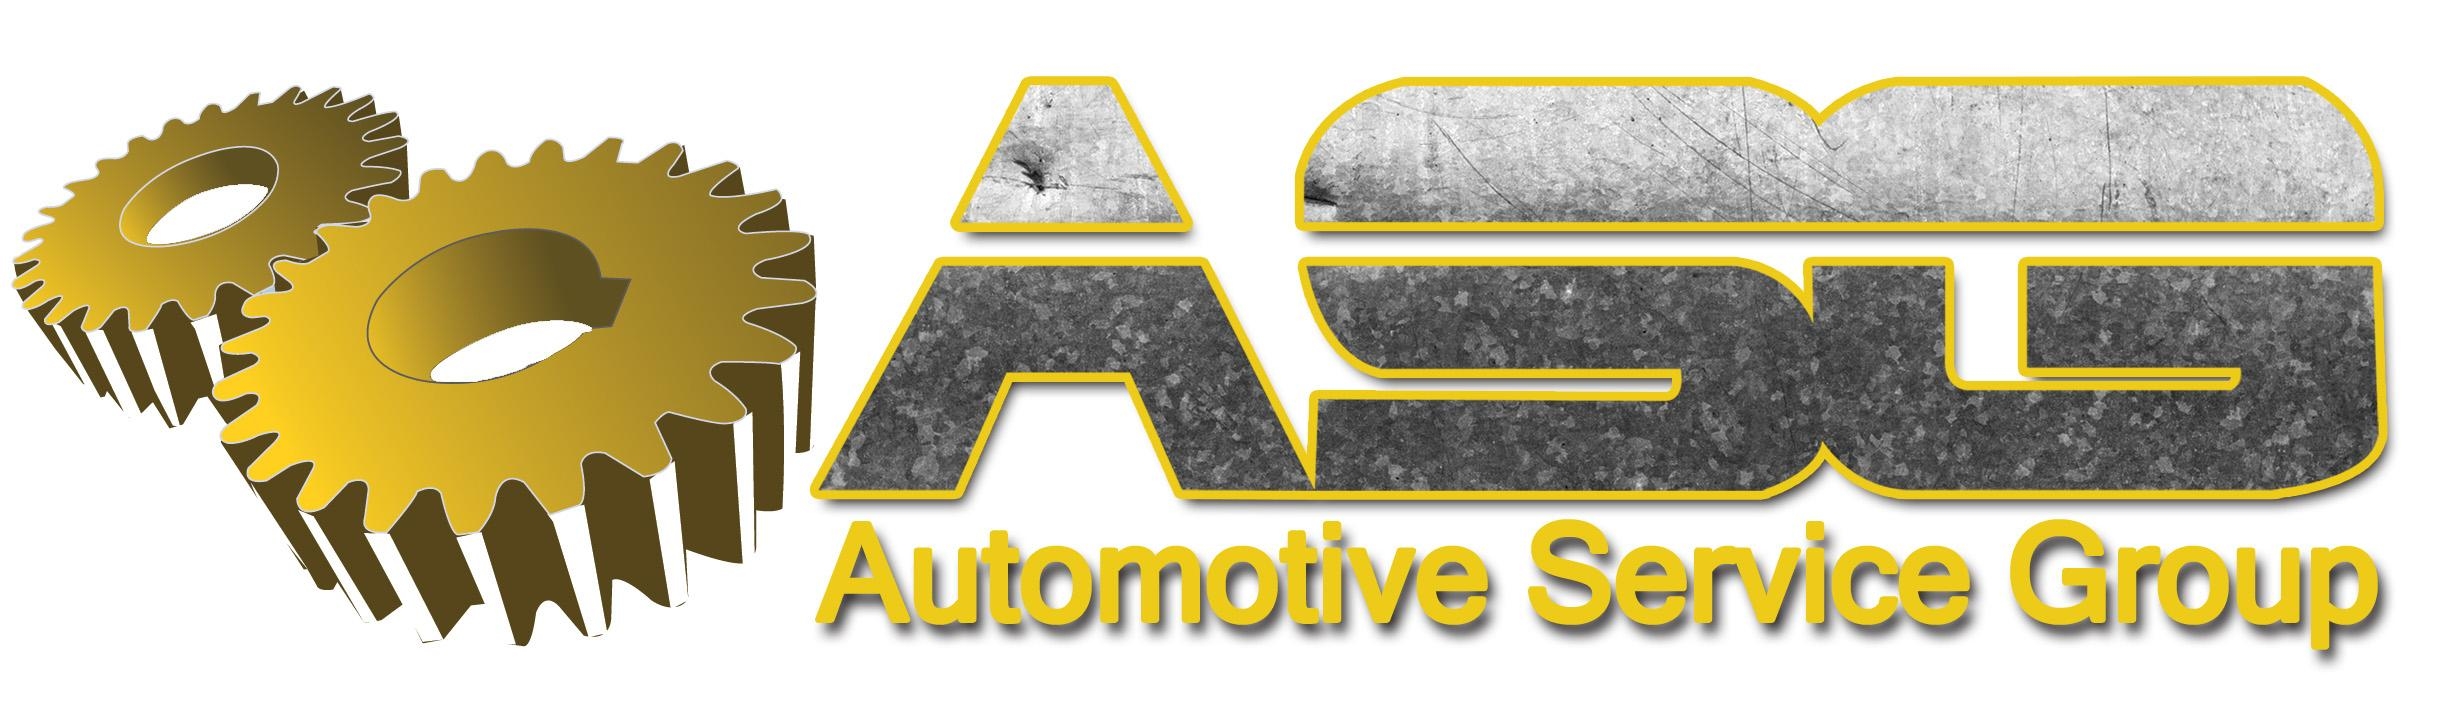 ASG Automotive